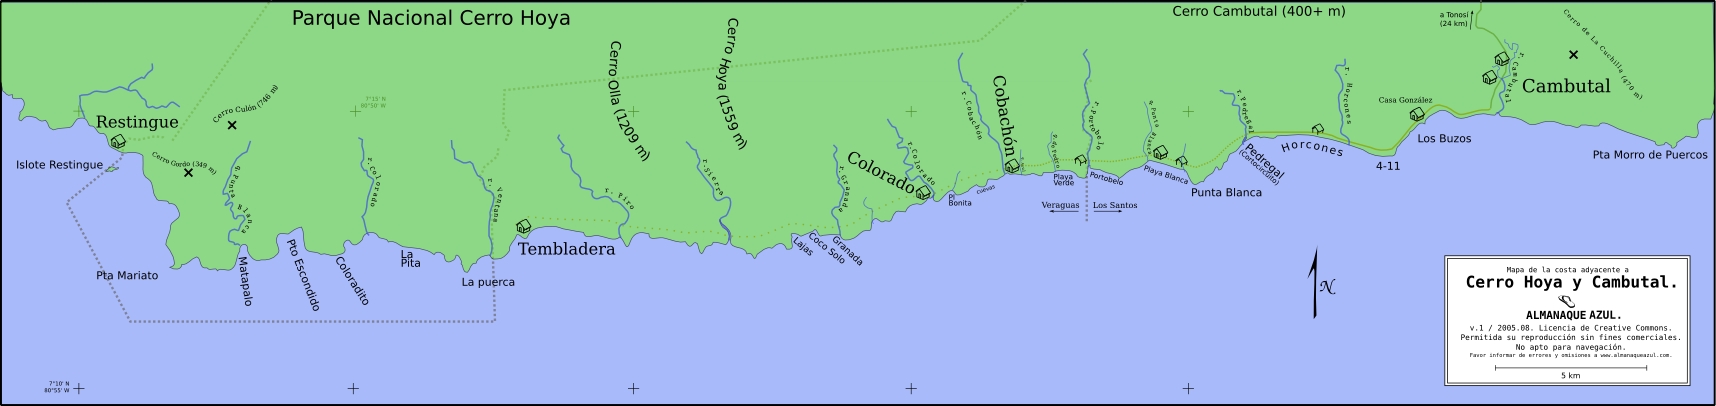 Mapa Cambutal y Cerro Hoya